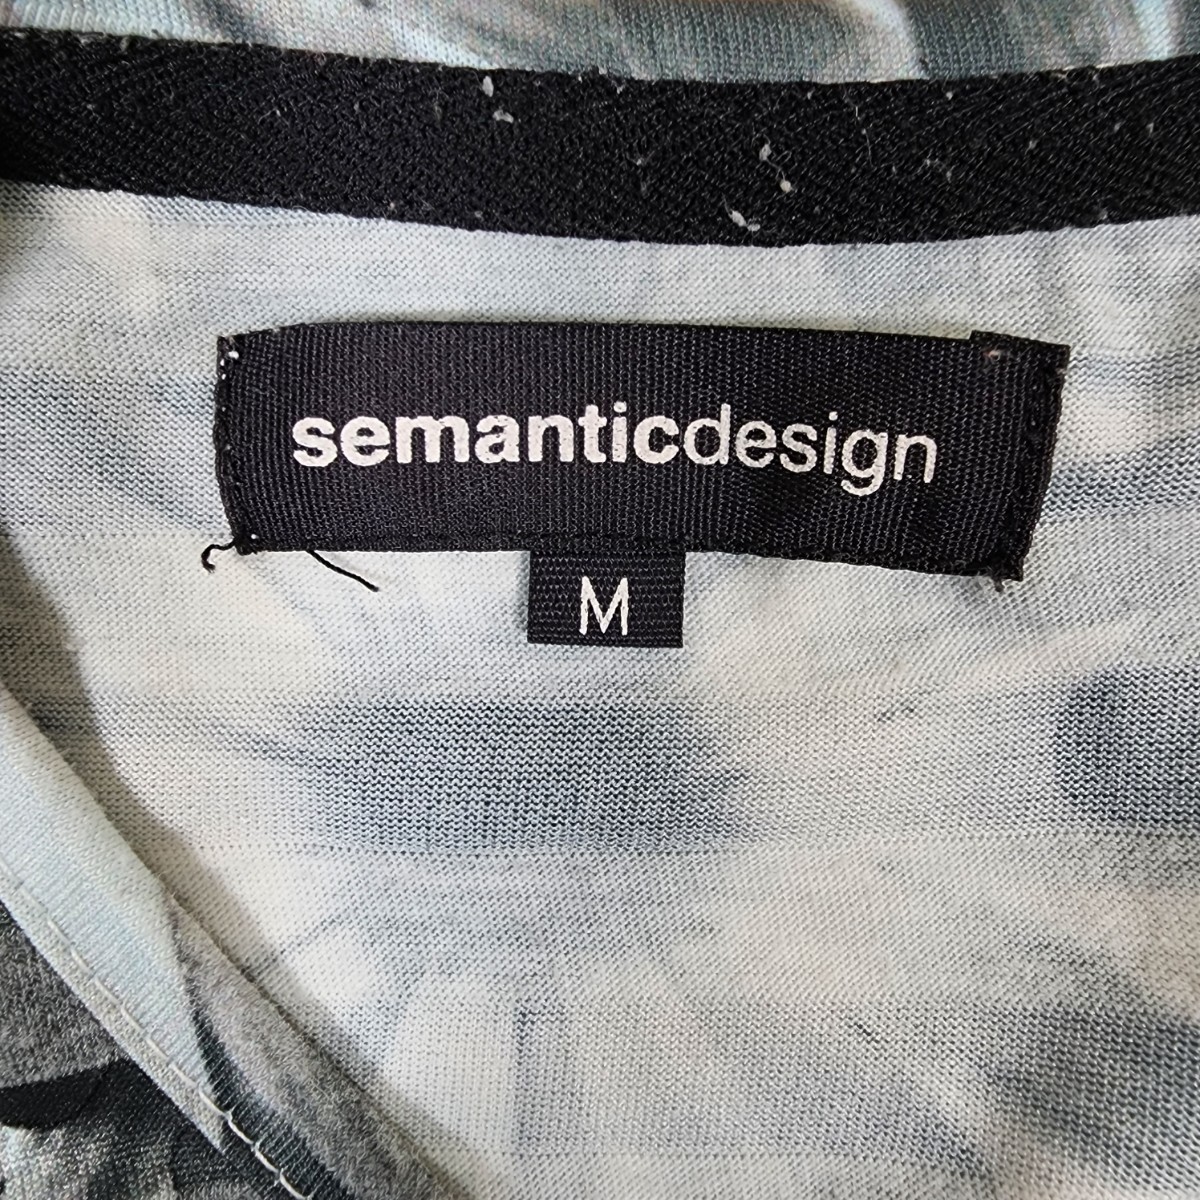 Y3 semanticdesign セマンティックデザイン タカキュー メンズ Tシャツ 半袖 かわいい M グレー 灰 ボーダー フラワー 花柄 _画像8